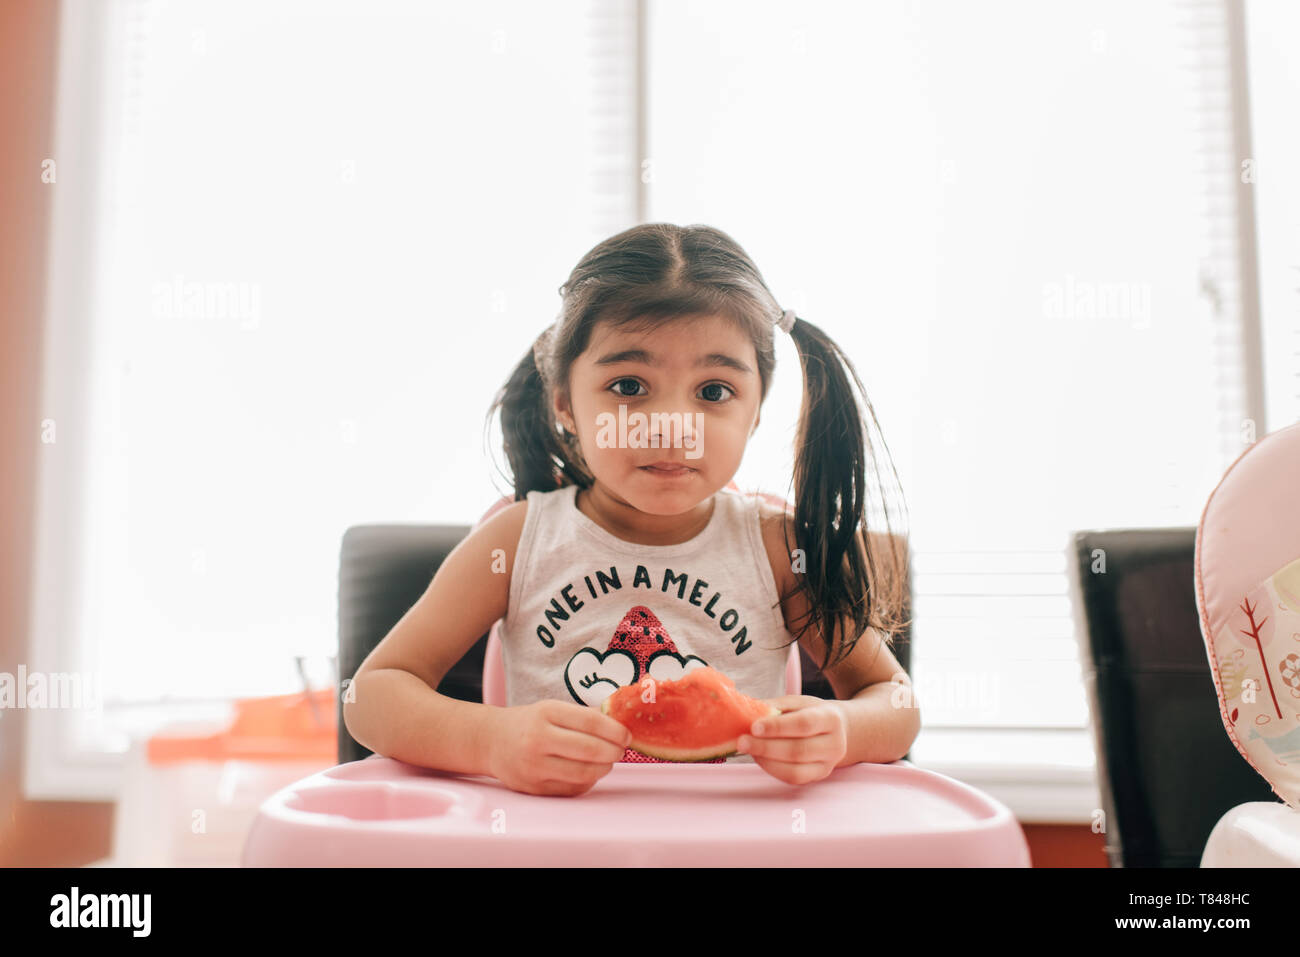 Fille dans une chaise haute holding water melon, portrait Banque D'Images